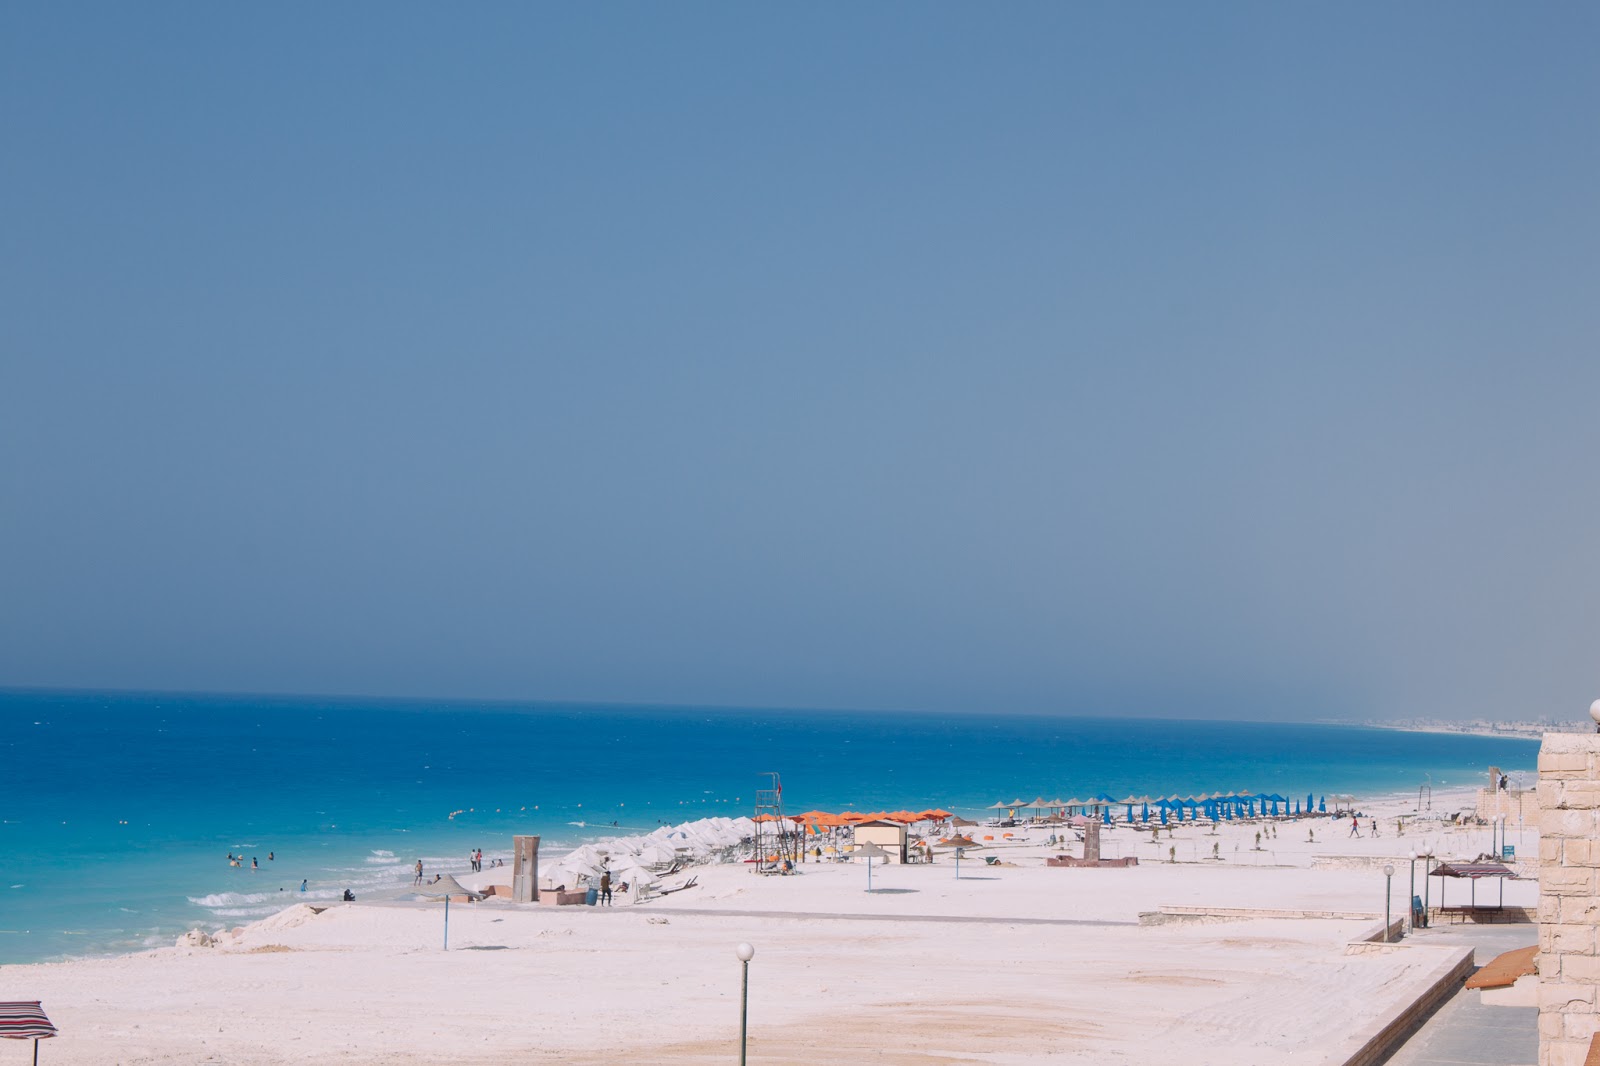 Fotografie cu Assiut University Beach cu o suprafață de apa pură turcoaz